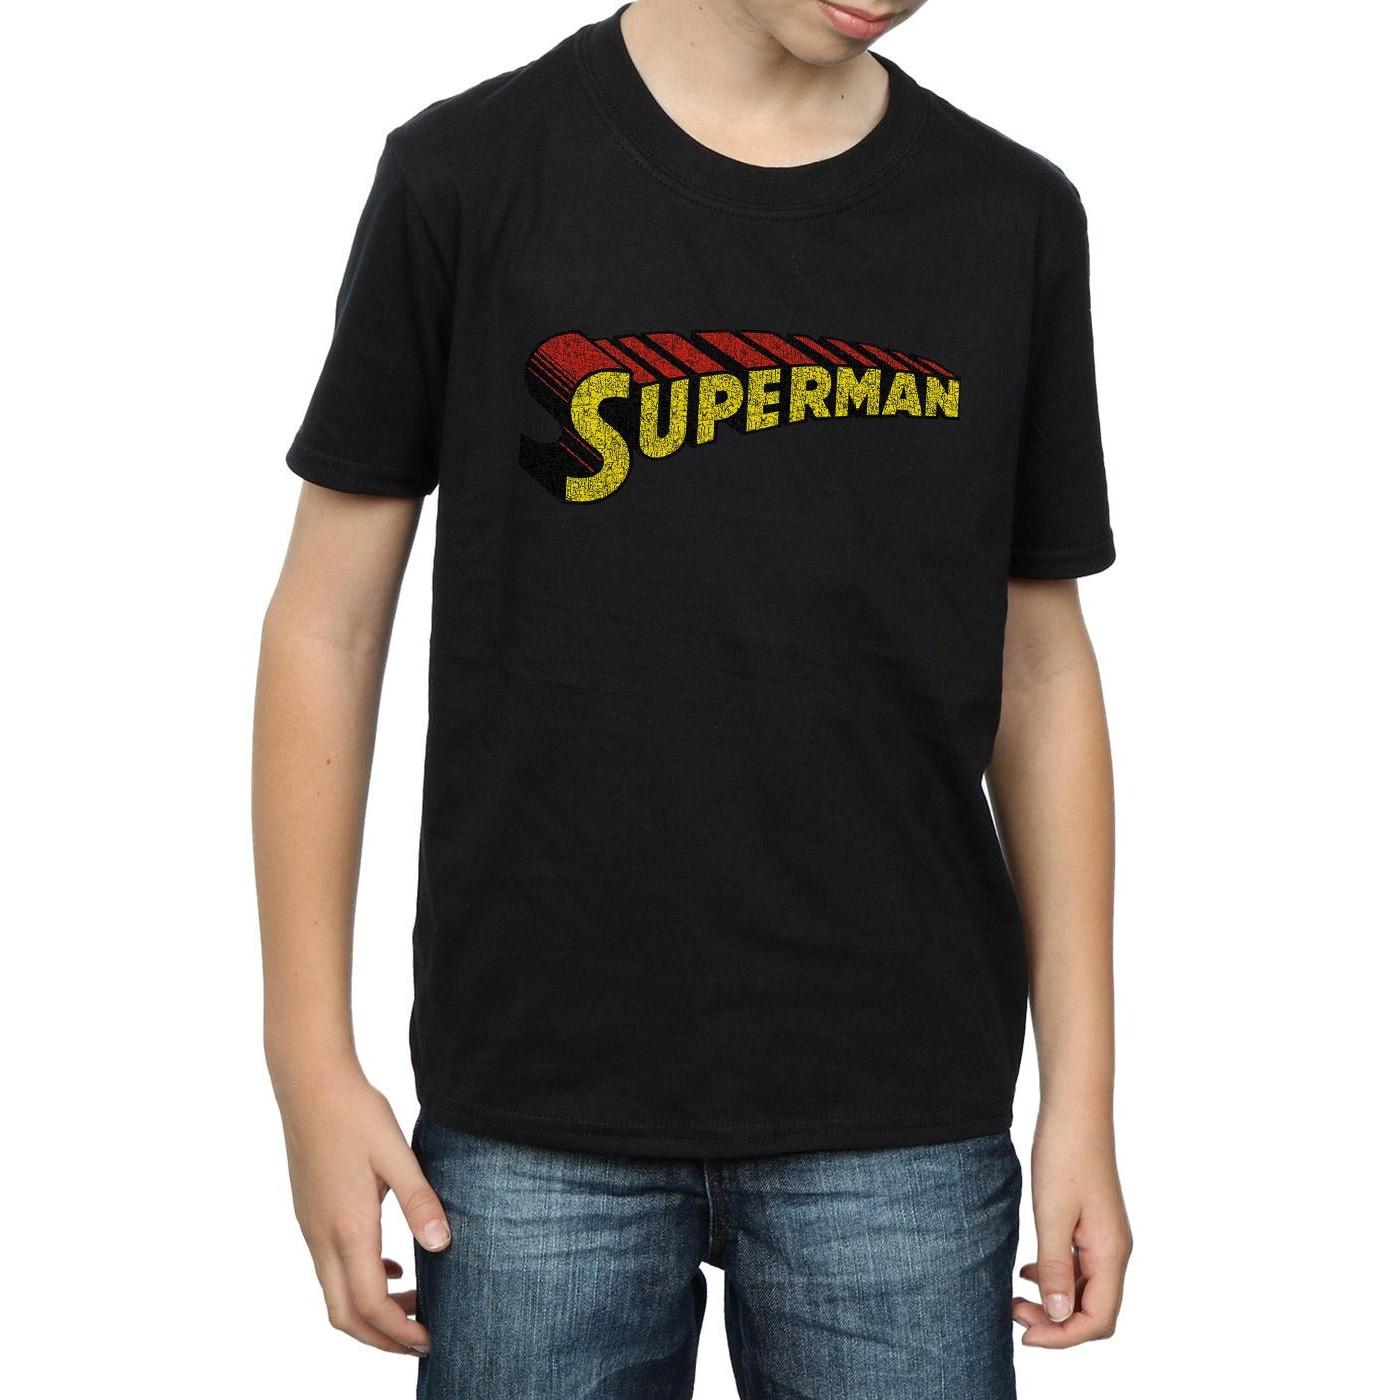 DC COMICS  Superman Telescopic Crackle Logo TShirt 